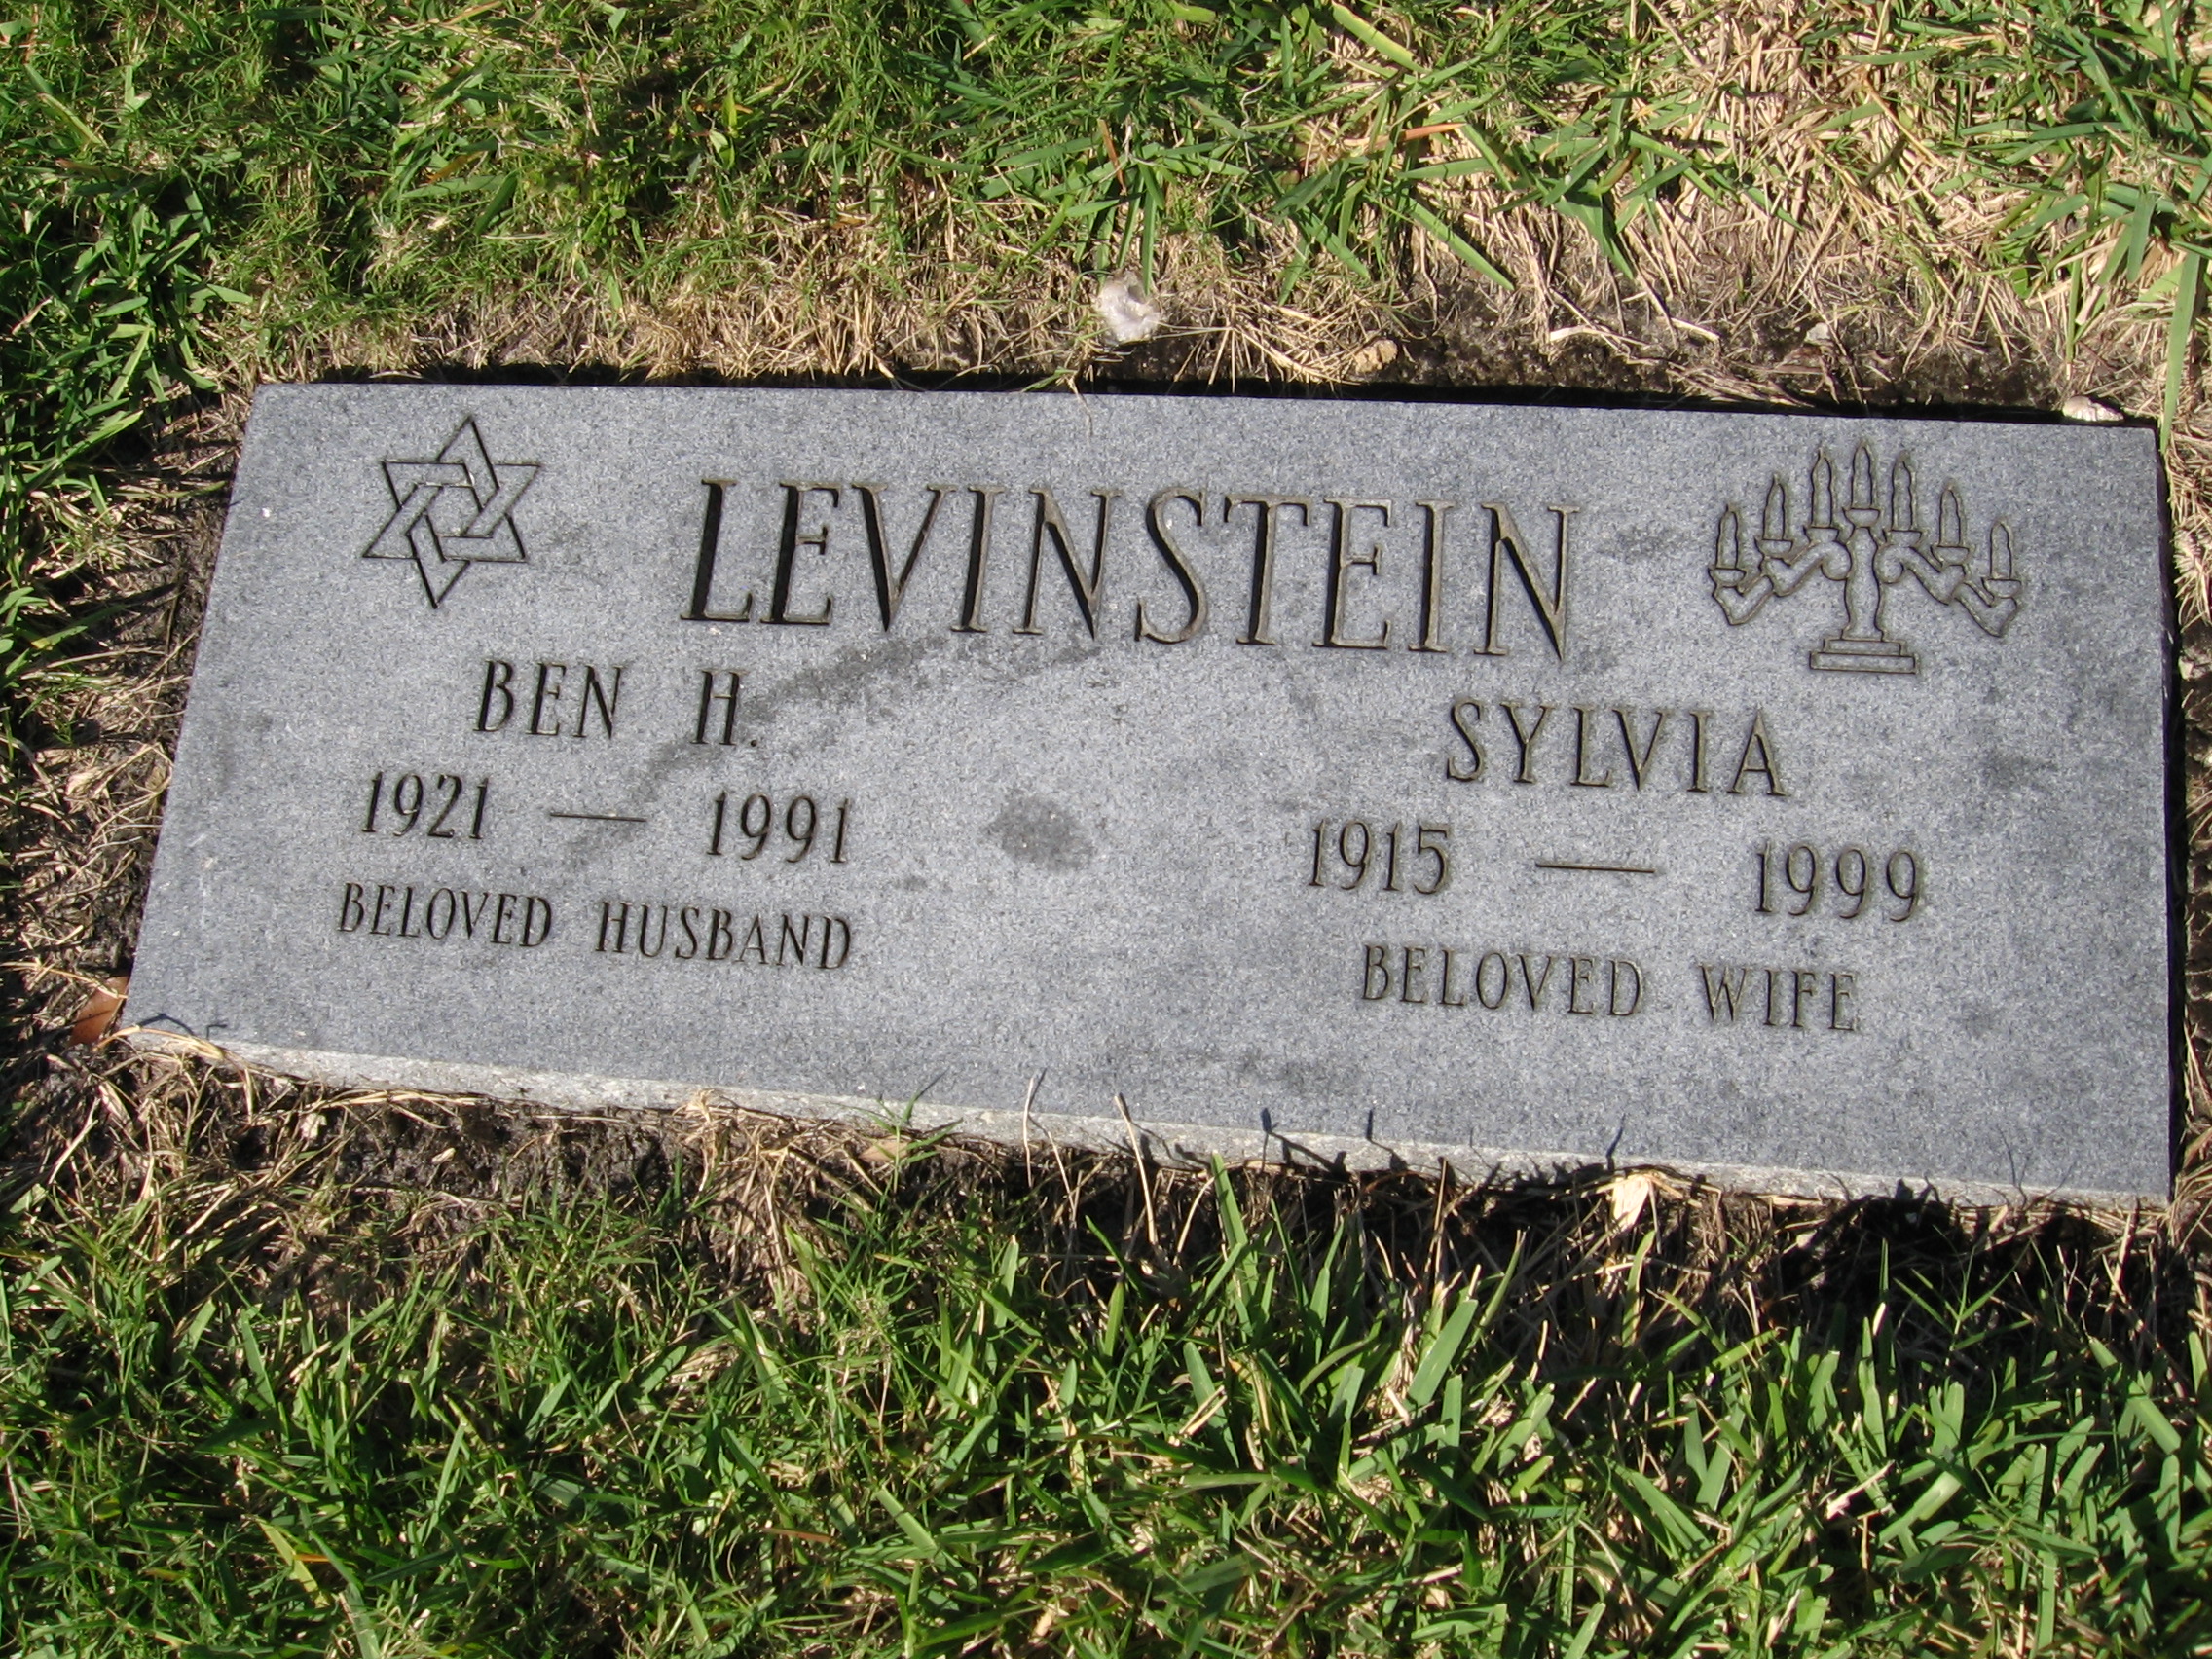 Ben H Levinstein